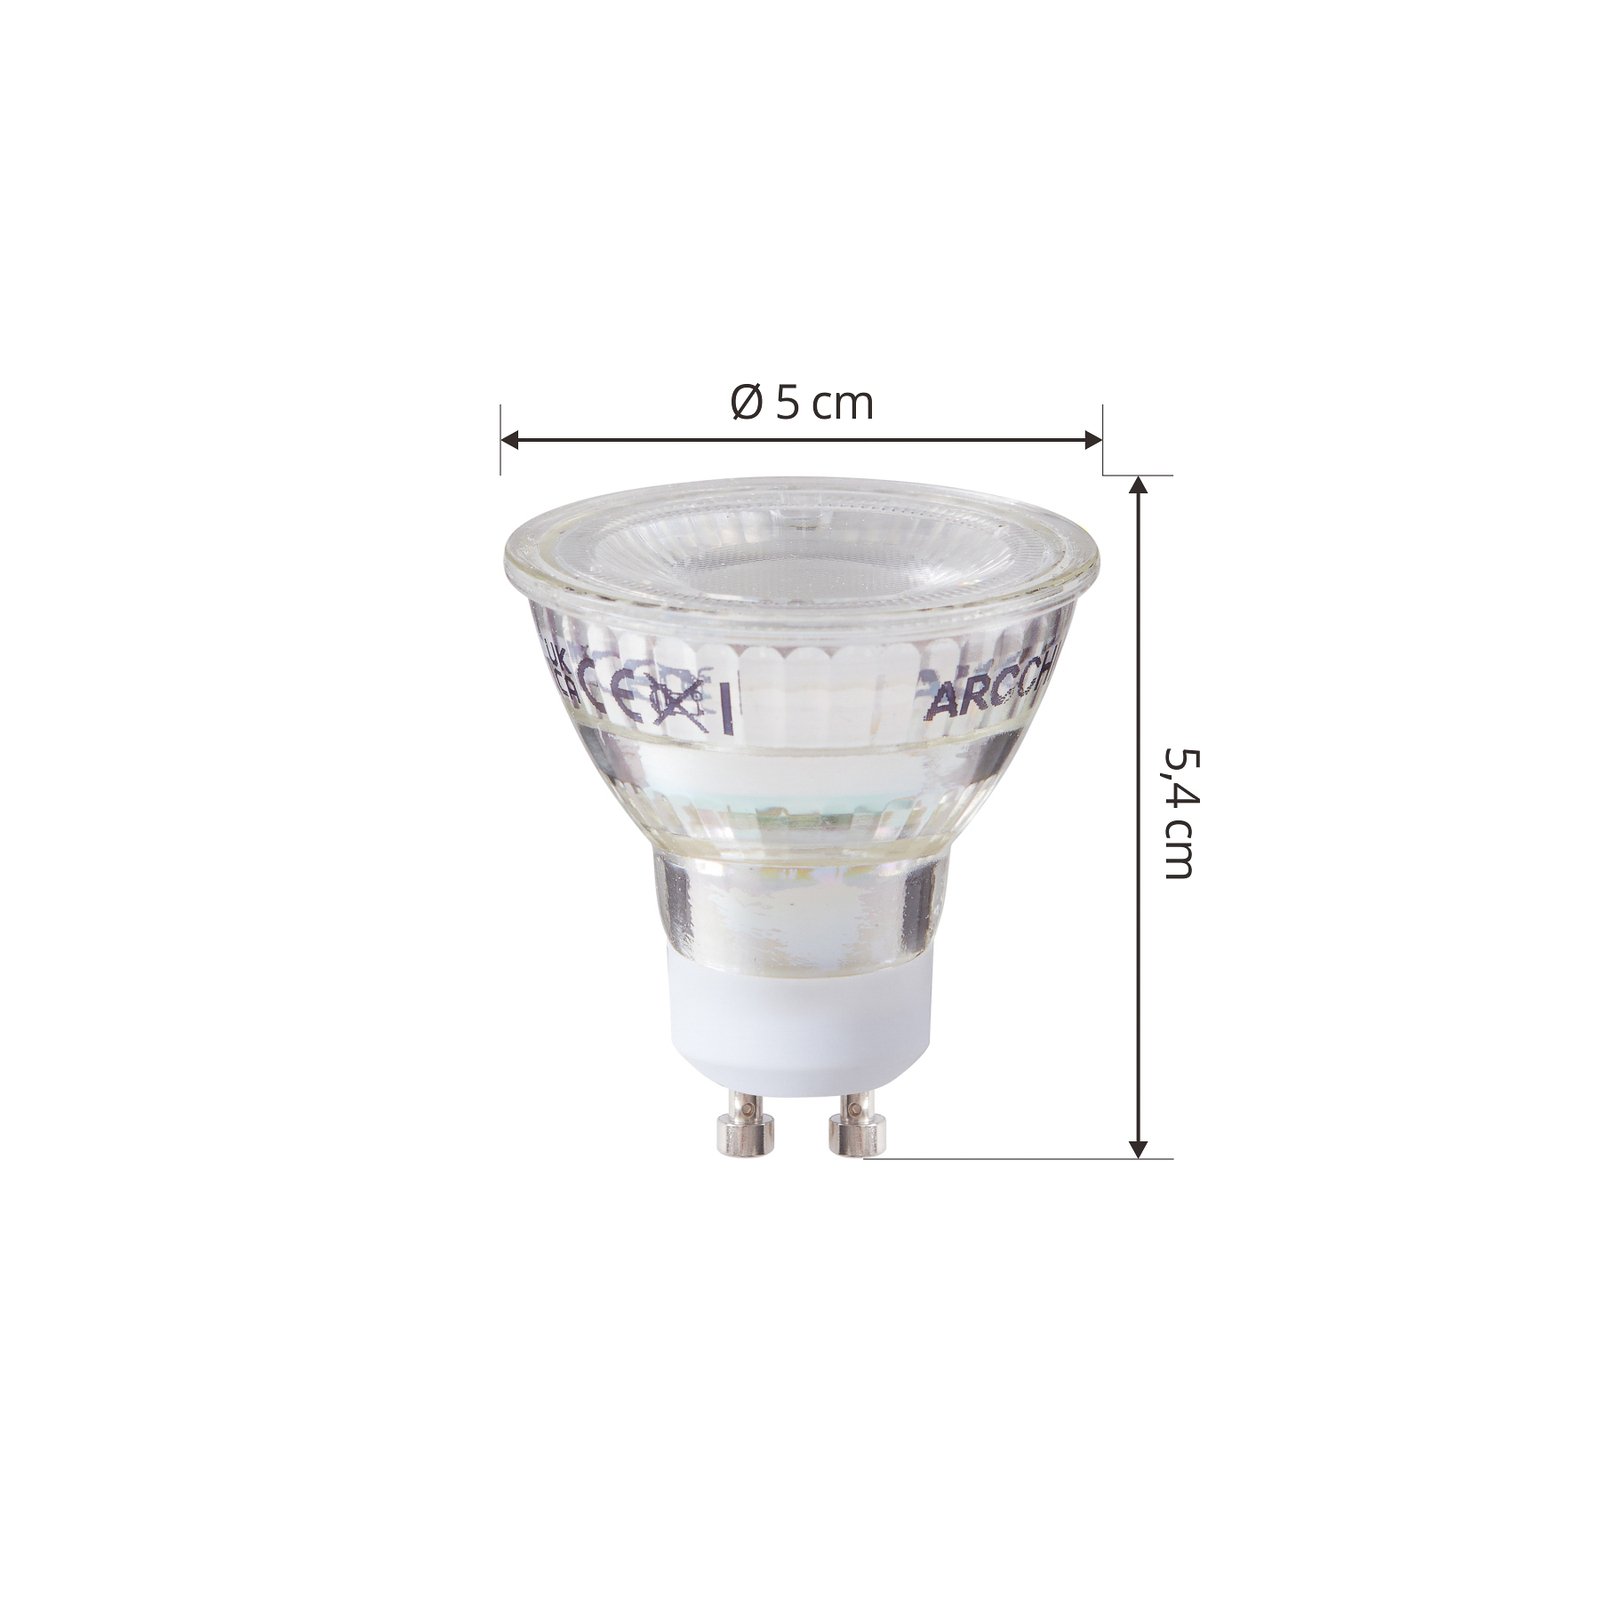 Conjunto de 2 lâmpadas LED Arcchio GU10 2.5W 6500K 450lm de vidro